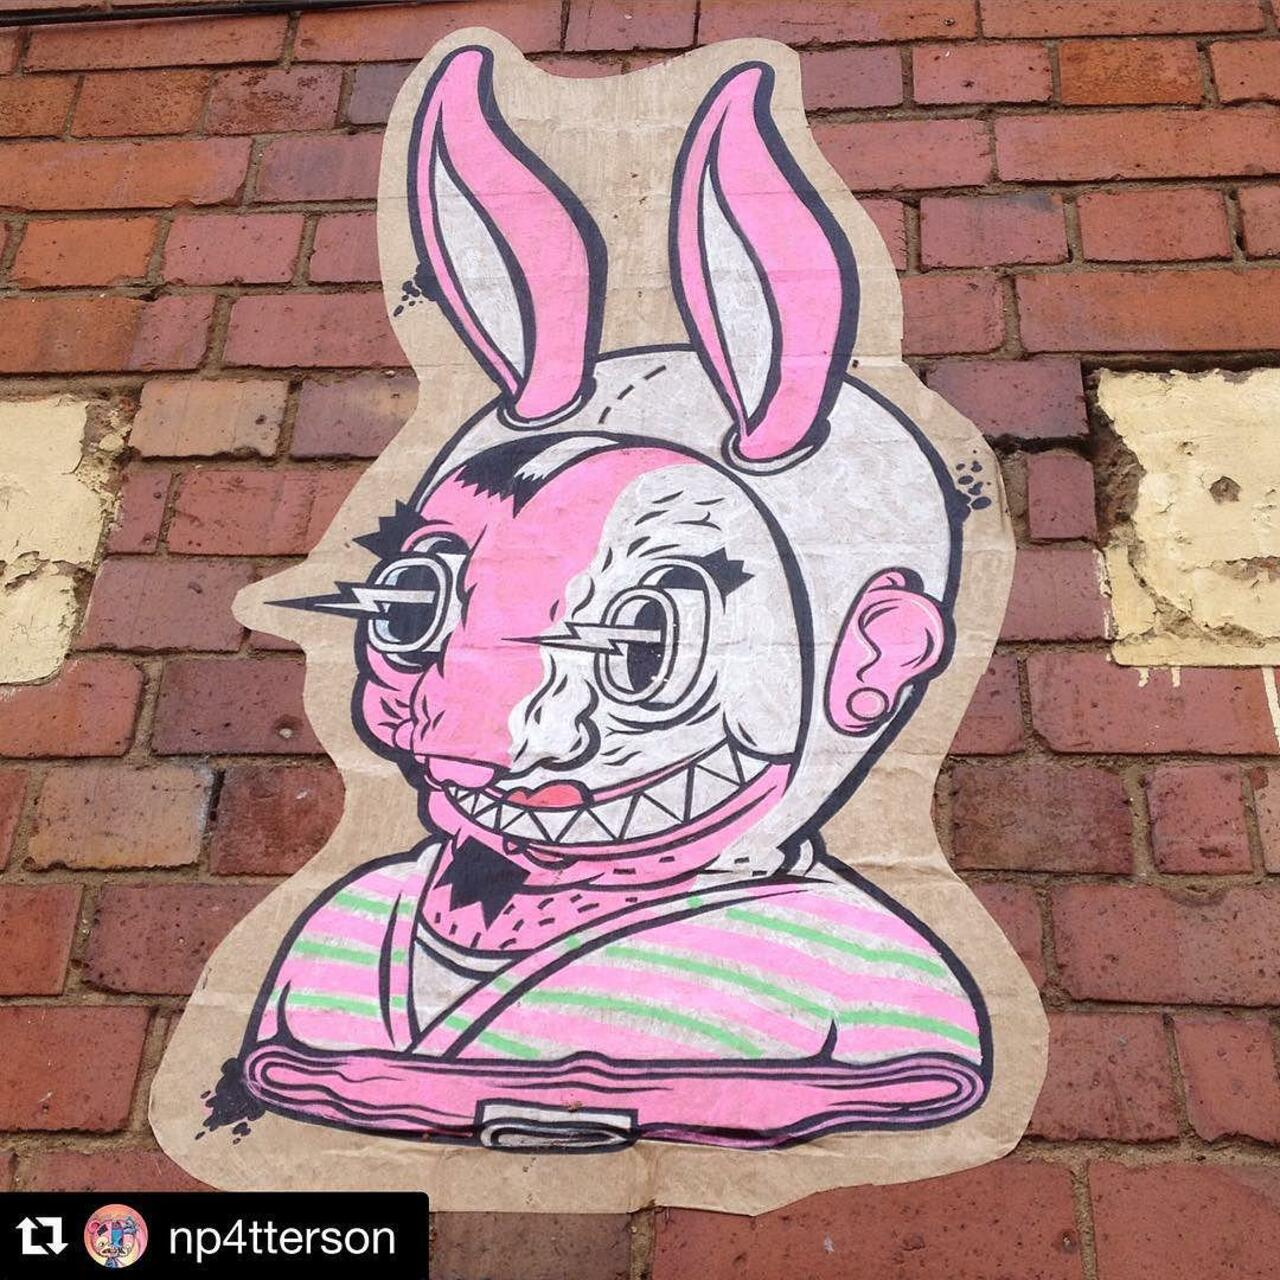 RT @mydigbeth: RT @GraffSpotting: #GraffSpotting #Instagram @setdebelleza #streetart #graffiti #digbeth @StreetArtBrum http://t.co/WVVkmLL8LF